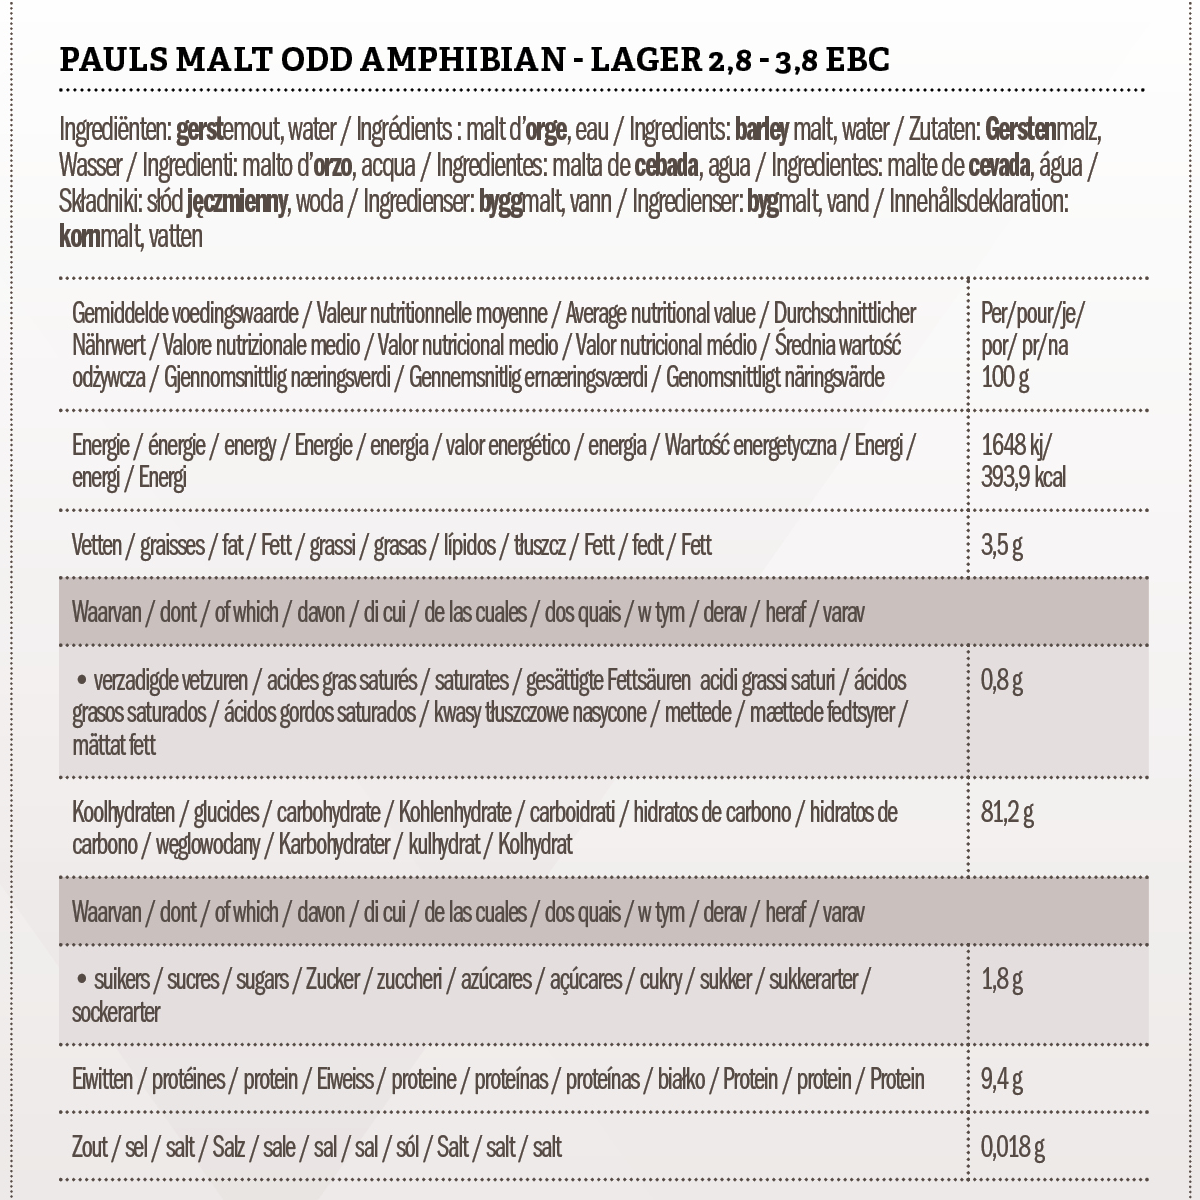 Pauls Malt Odd Amphibian - Lager 2.8 - 3.8 EBC 1 kg